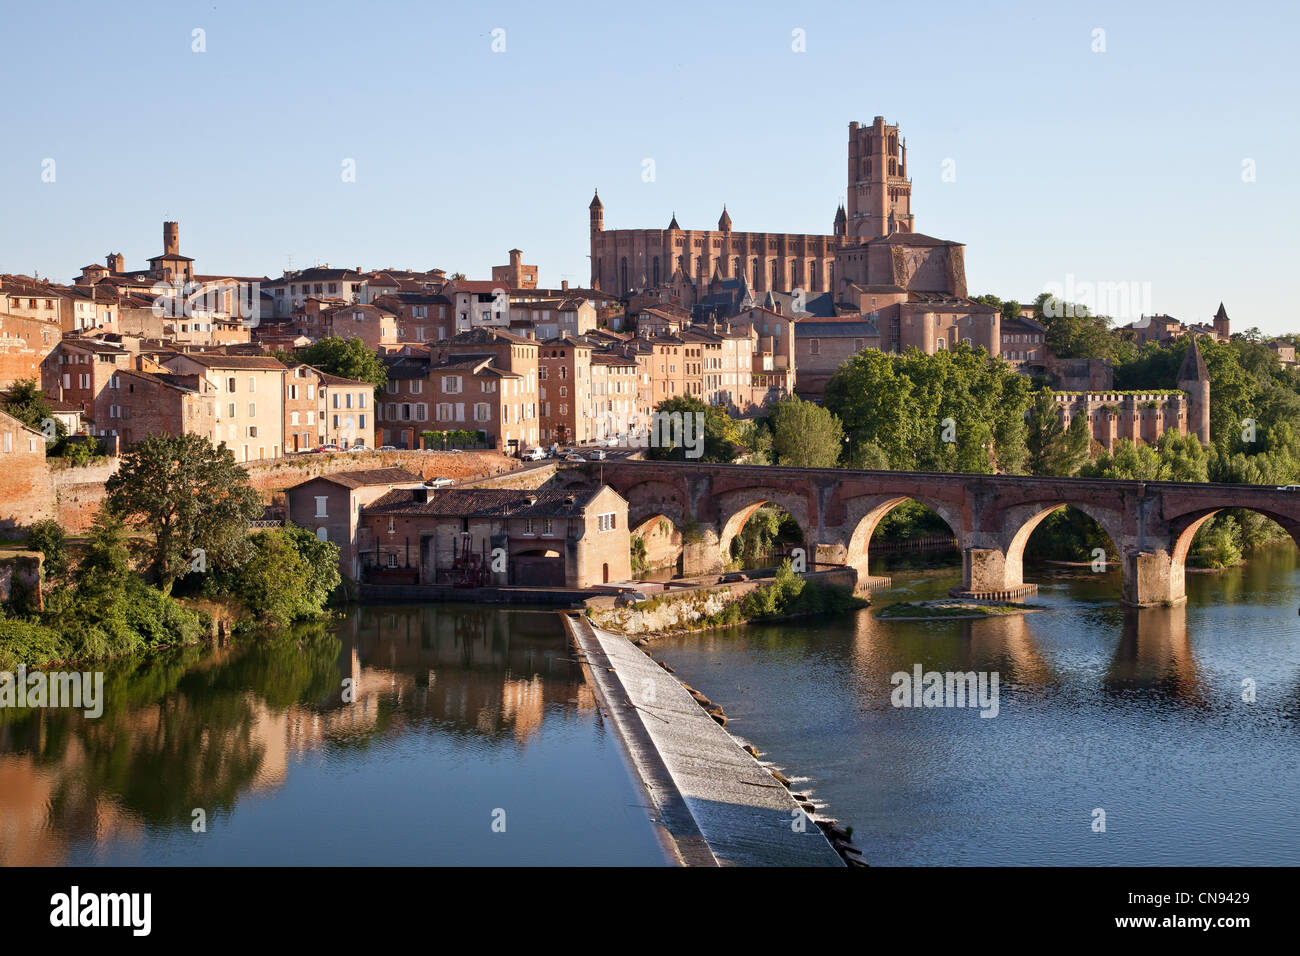 Frankreich, Tarn, Albi, der Bischofsstadt, aufgeführt als Weltkulturerbe der UNESCO, die Kathedrale Sainte Cecile die alte Brücke und die Stockfoto